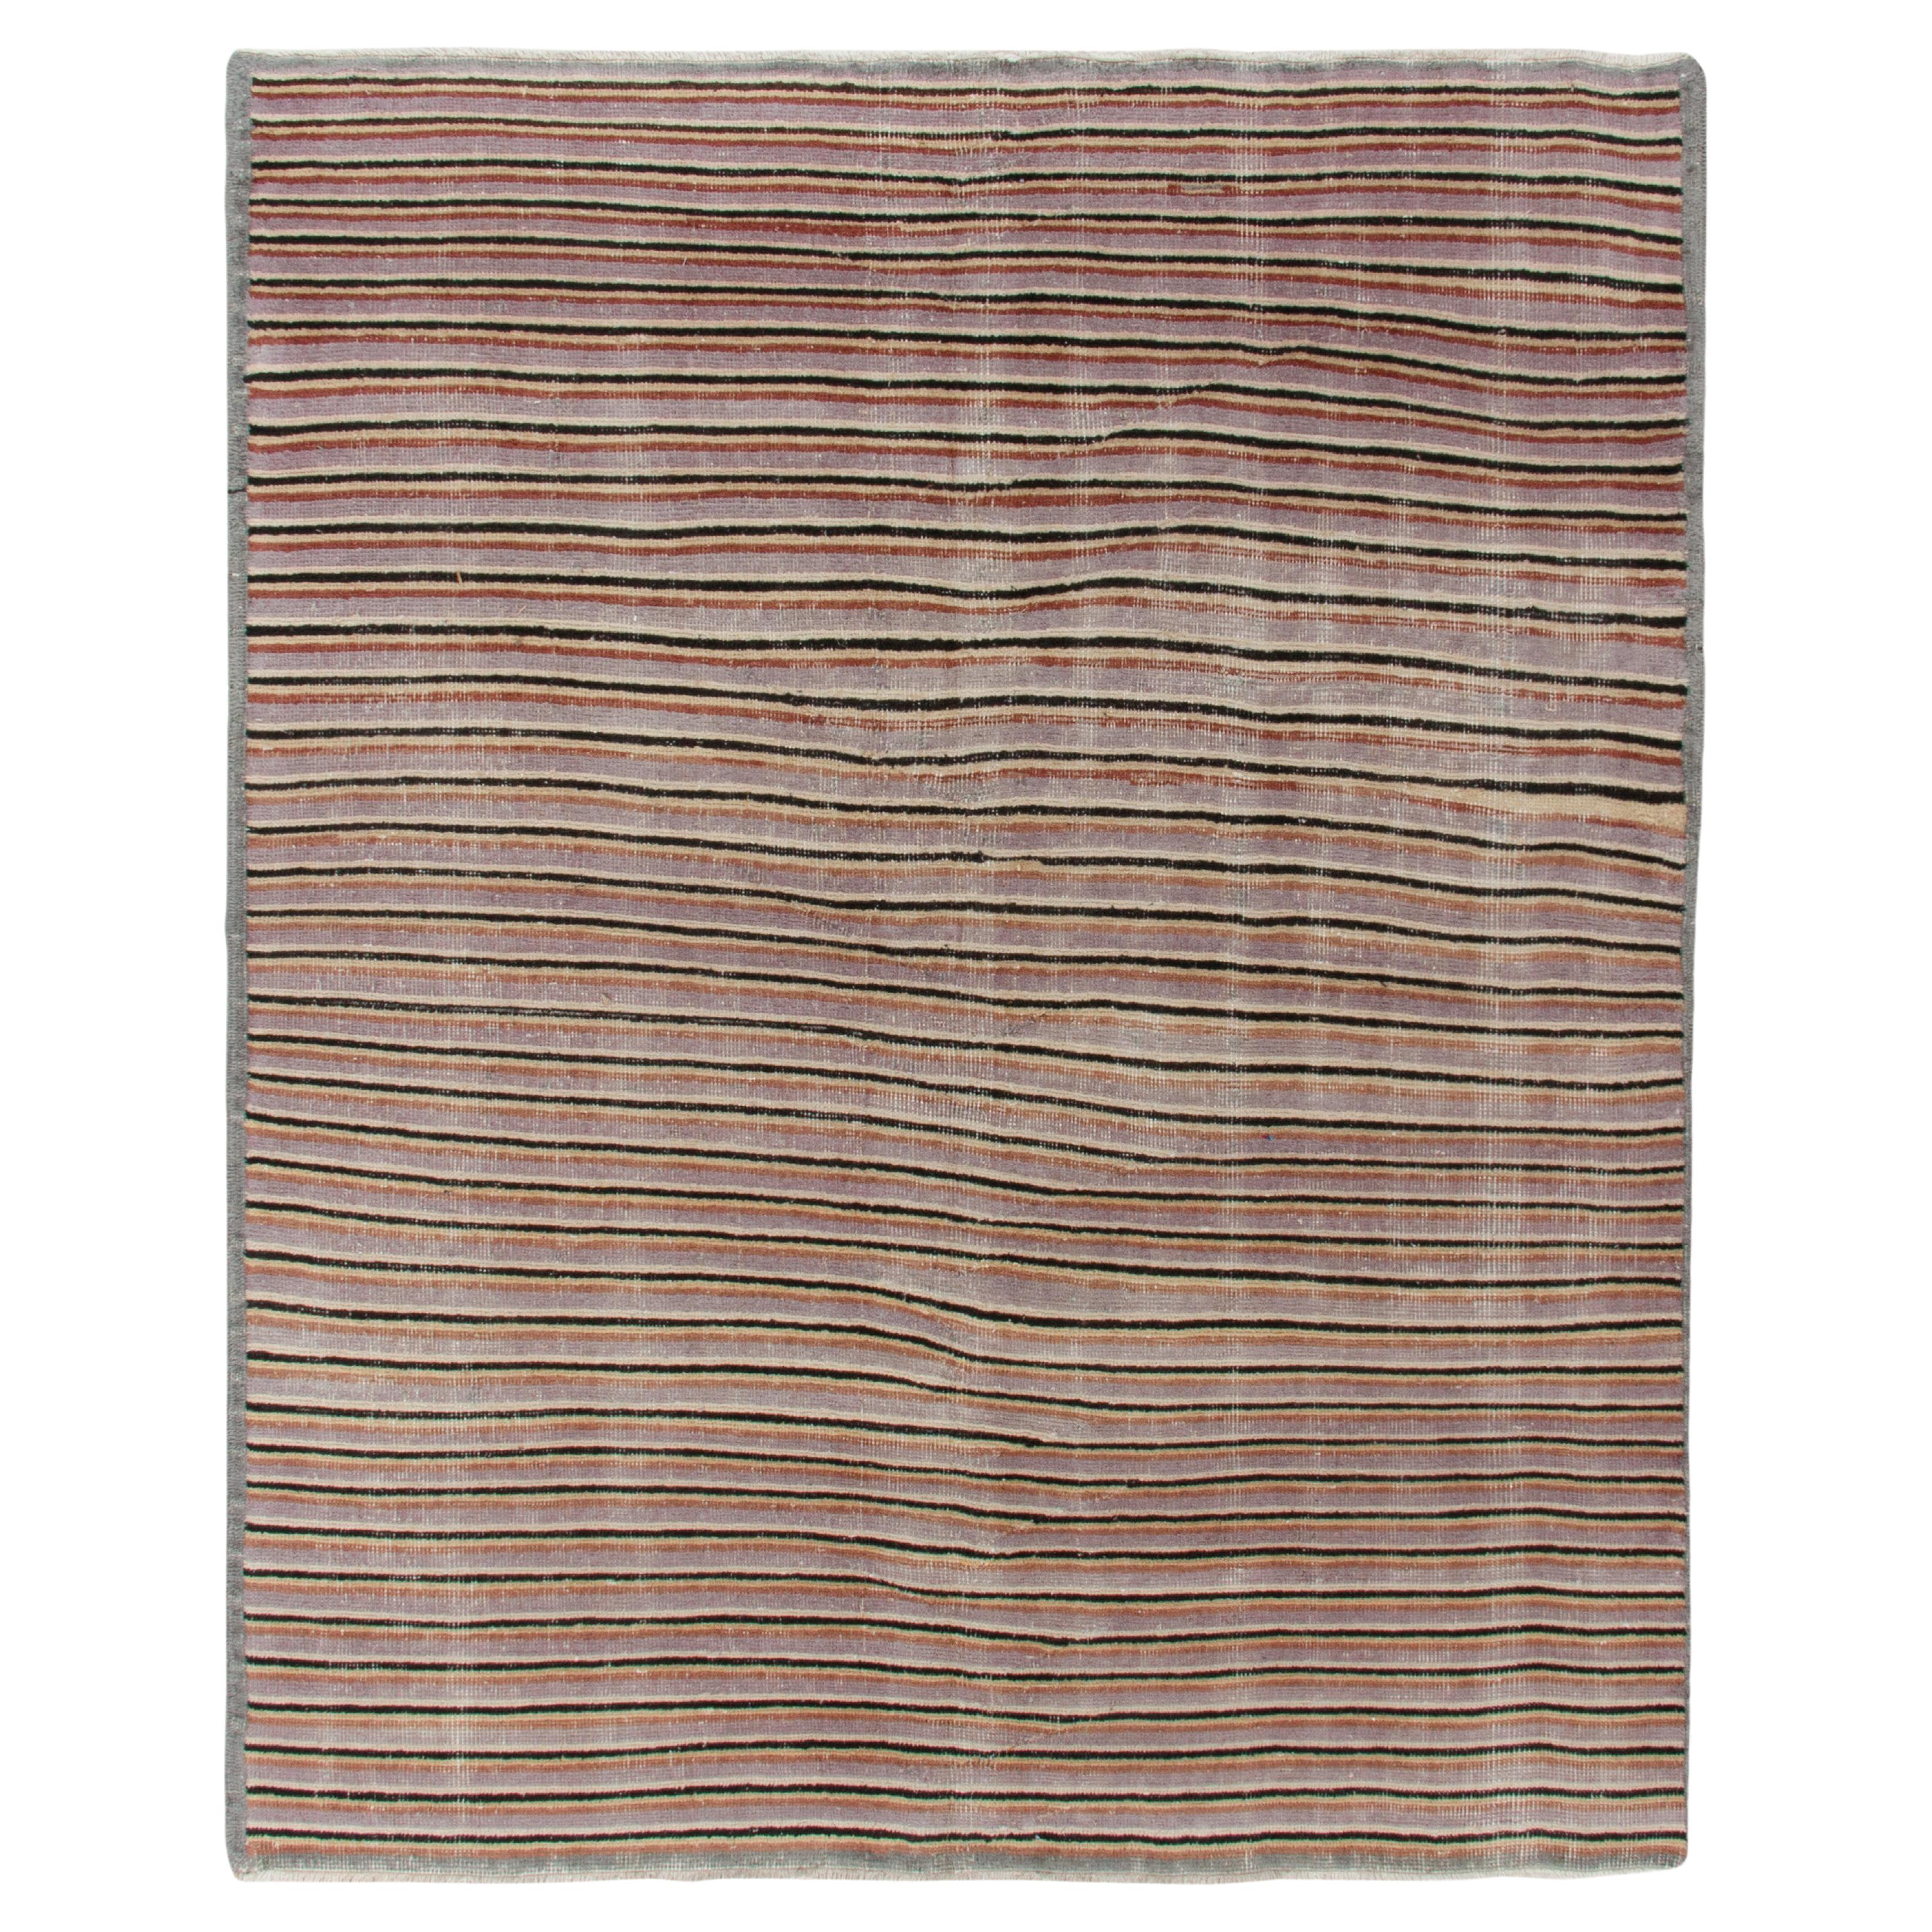 1960s Vintage Distressed Rug in Gray, Brown Striped Pattern by Rug & Kilim